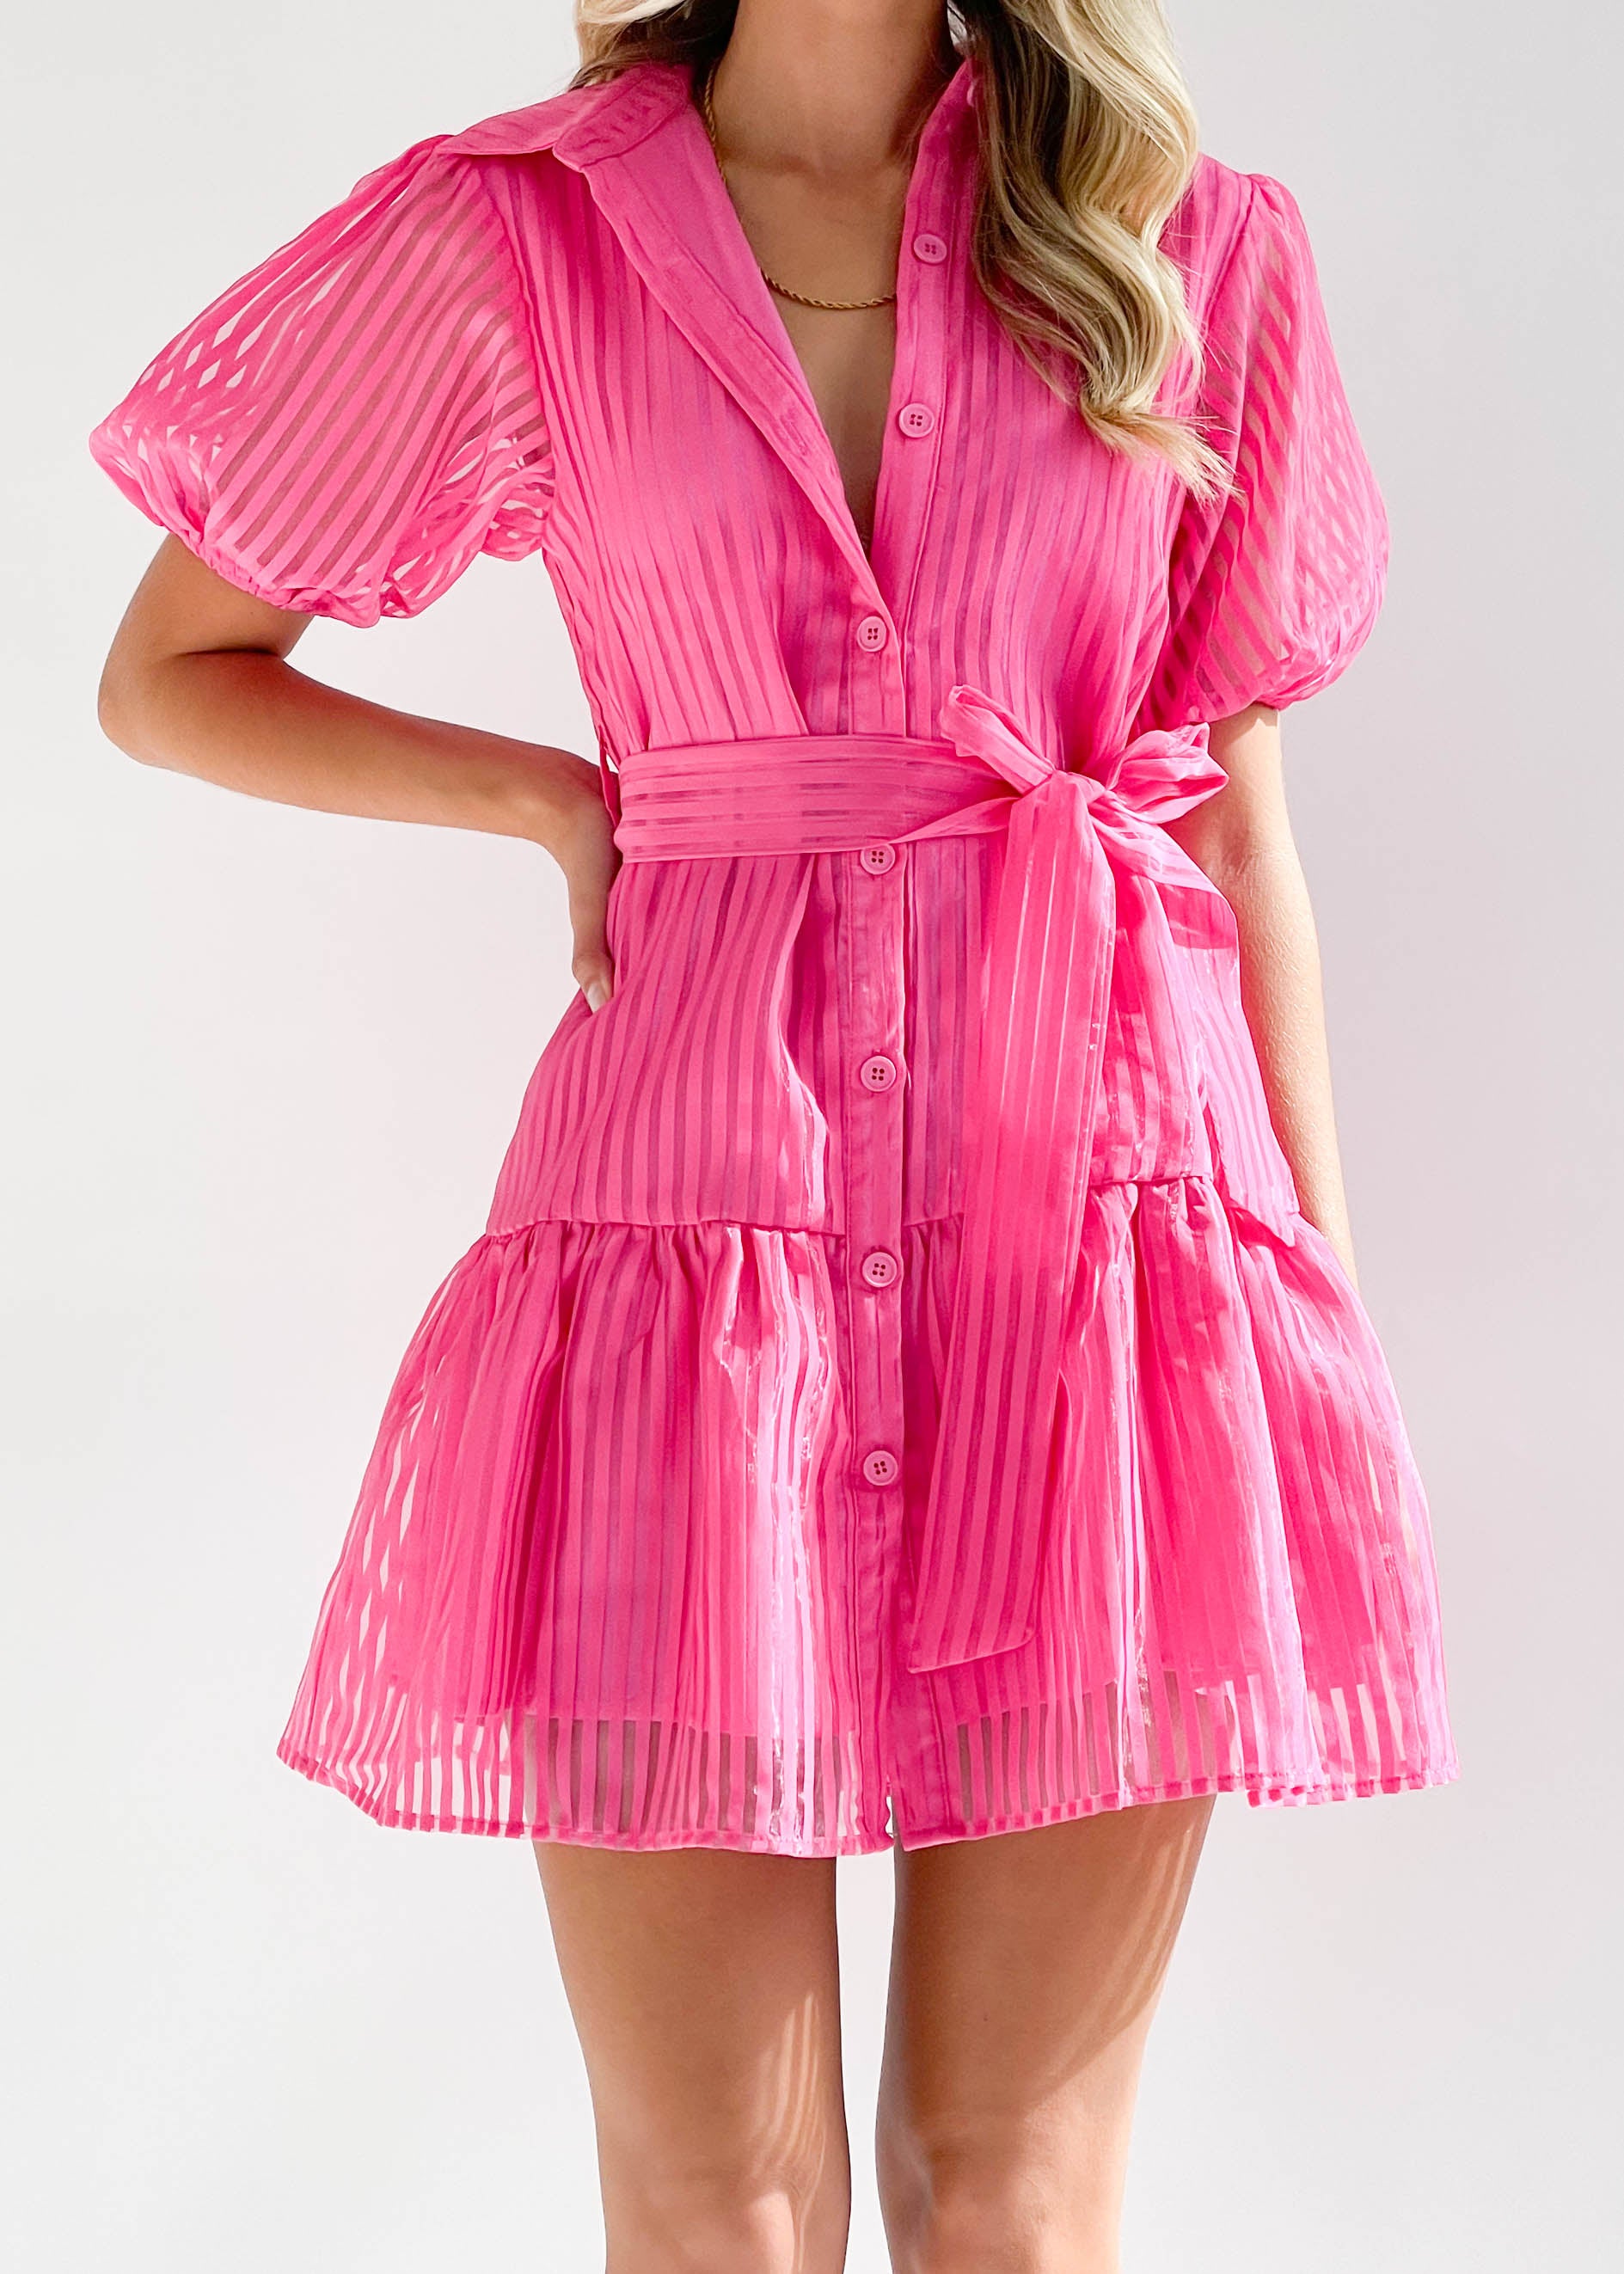 Elleney Dress - Hot Pink